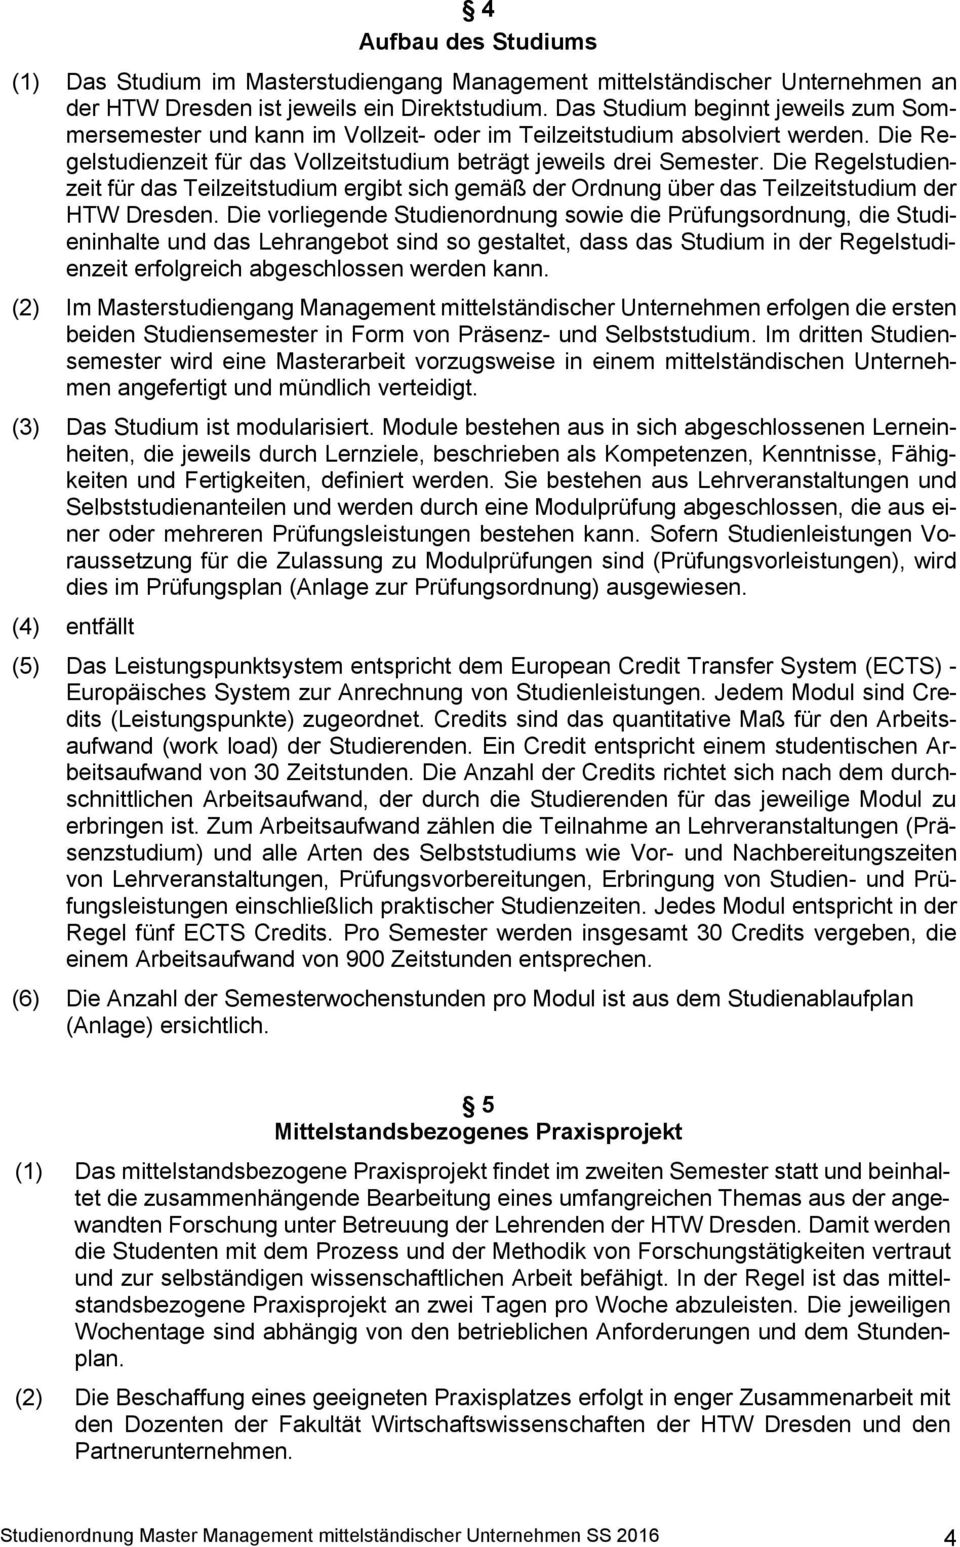 Die Regelstudienzeit für das Teilzeitstudium ergibt sich gemäß der Ordnung über das Teilzeitstudium der HTW Dresden.